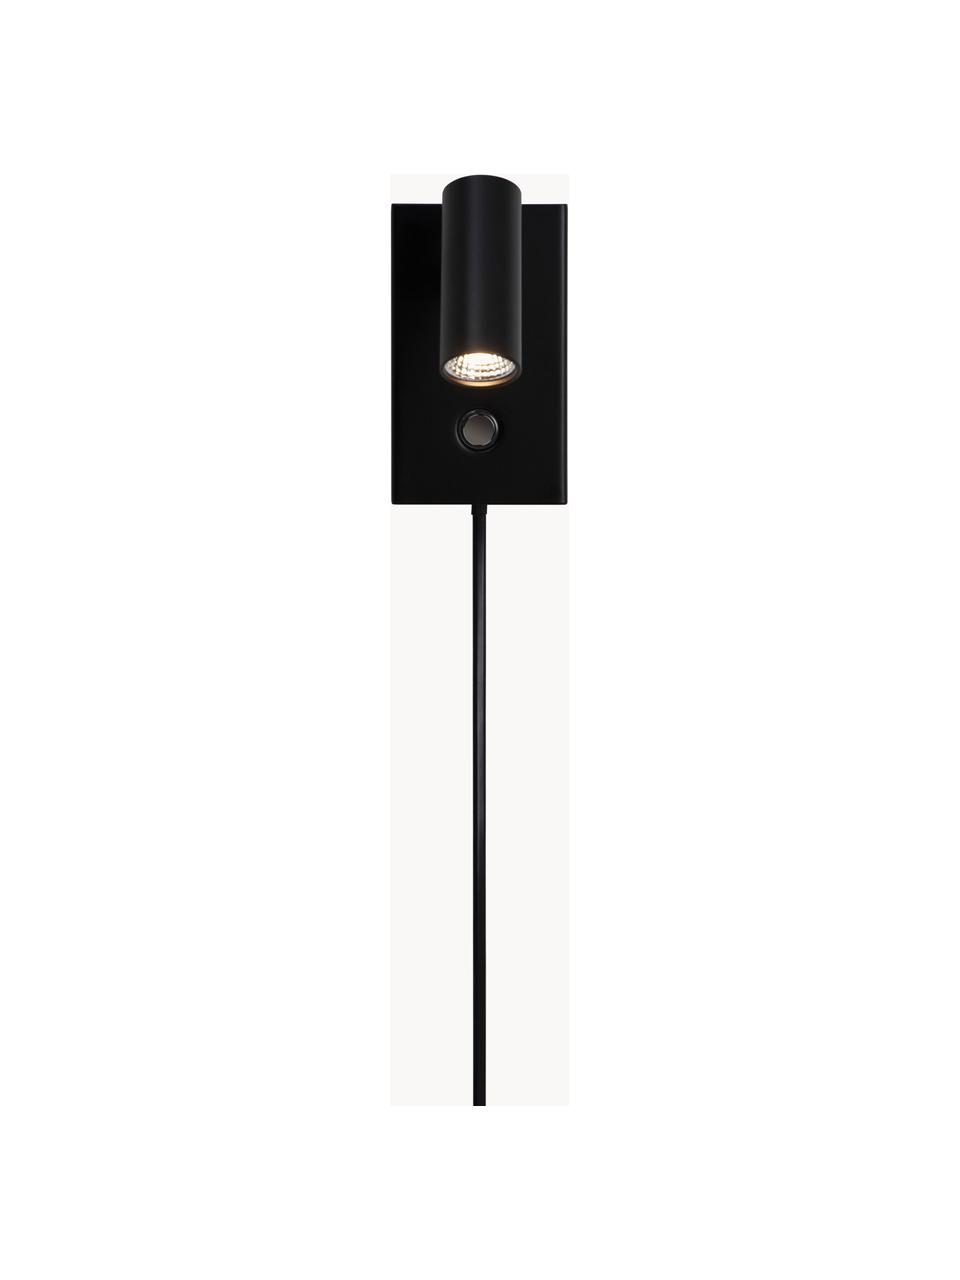 Kleine dimbare LED wandlamp Omari met stekker, Lampenkap: gecoat metaal, Zwart, B 7 x H 12 cm